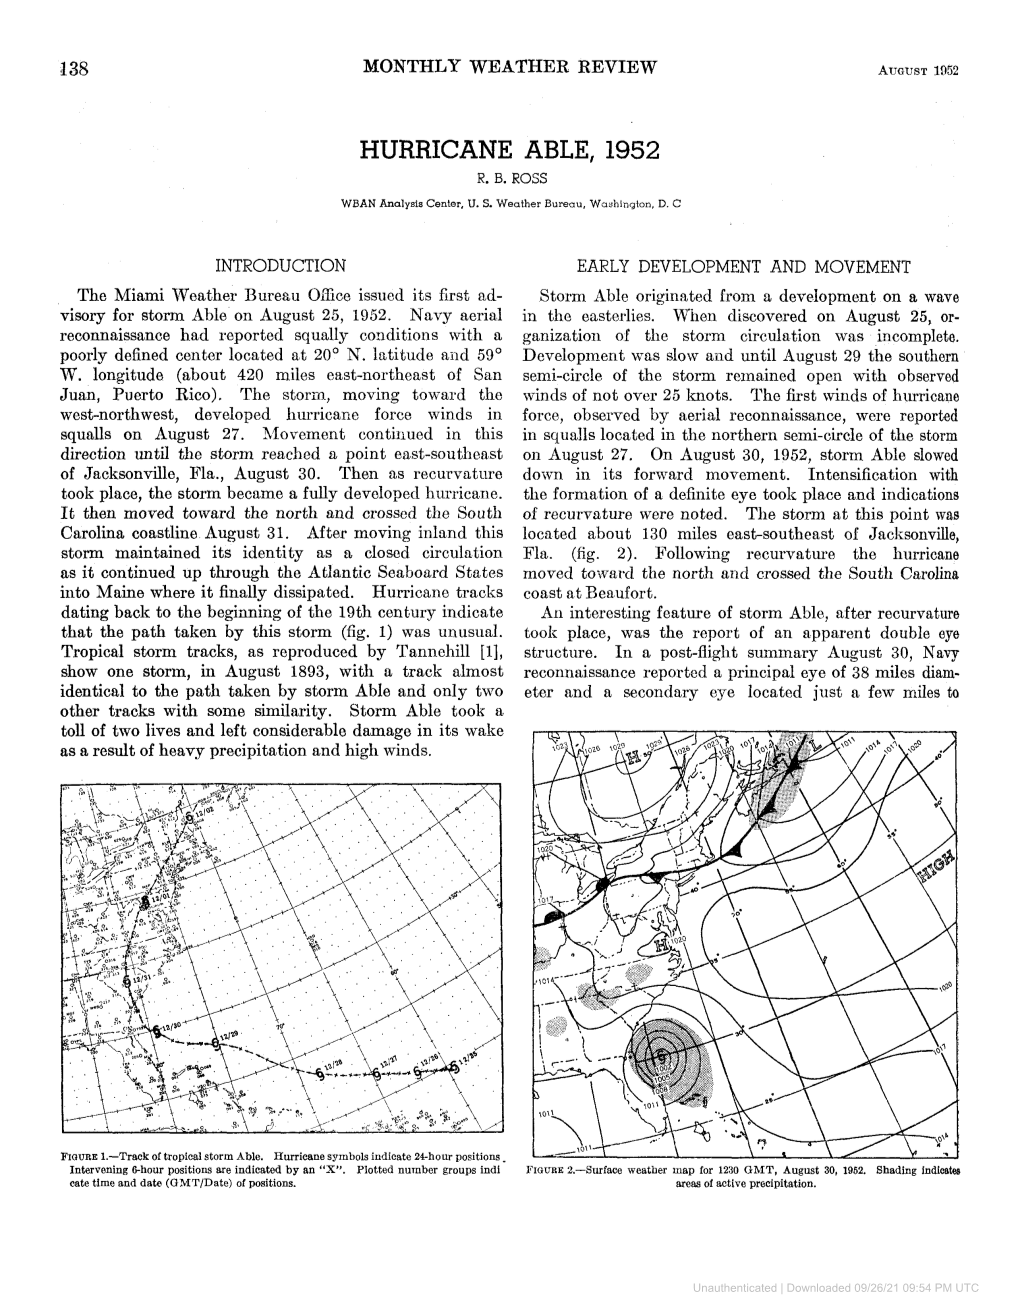 Hurricane Able, 1952 R